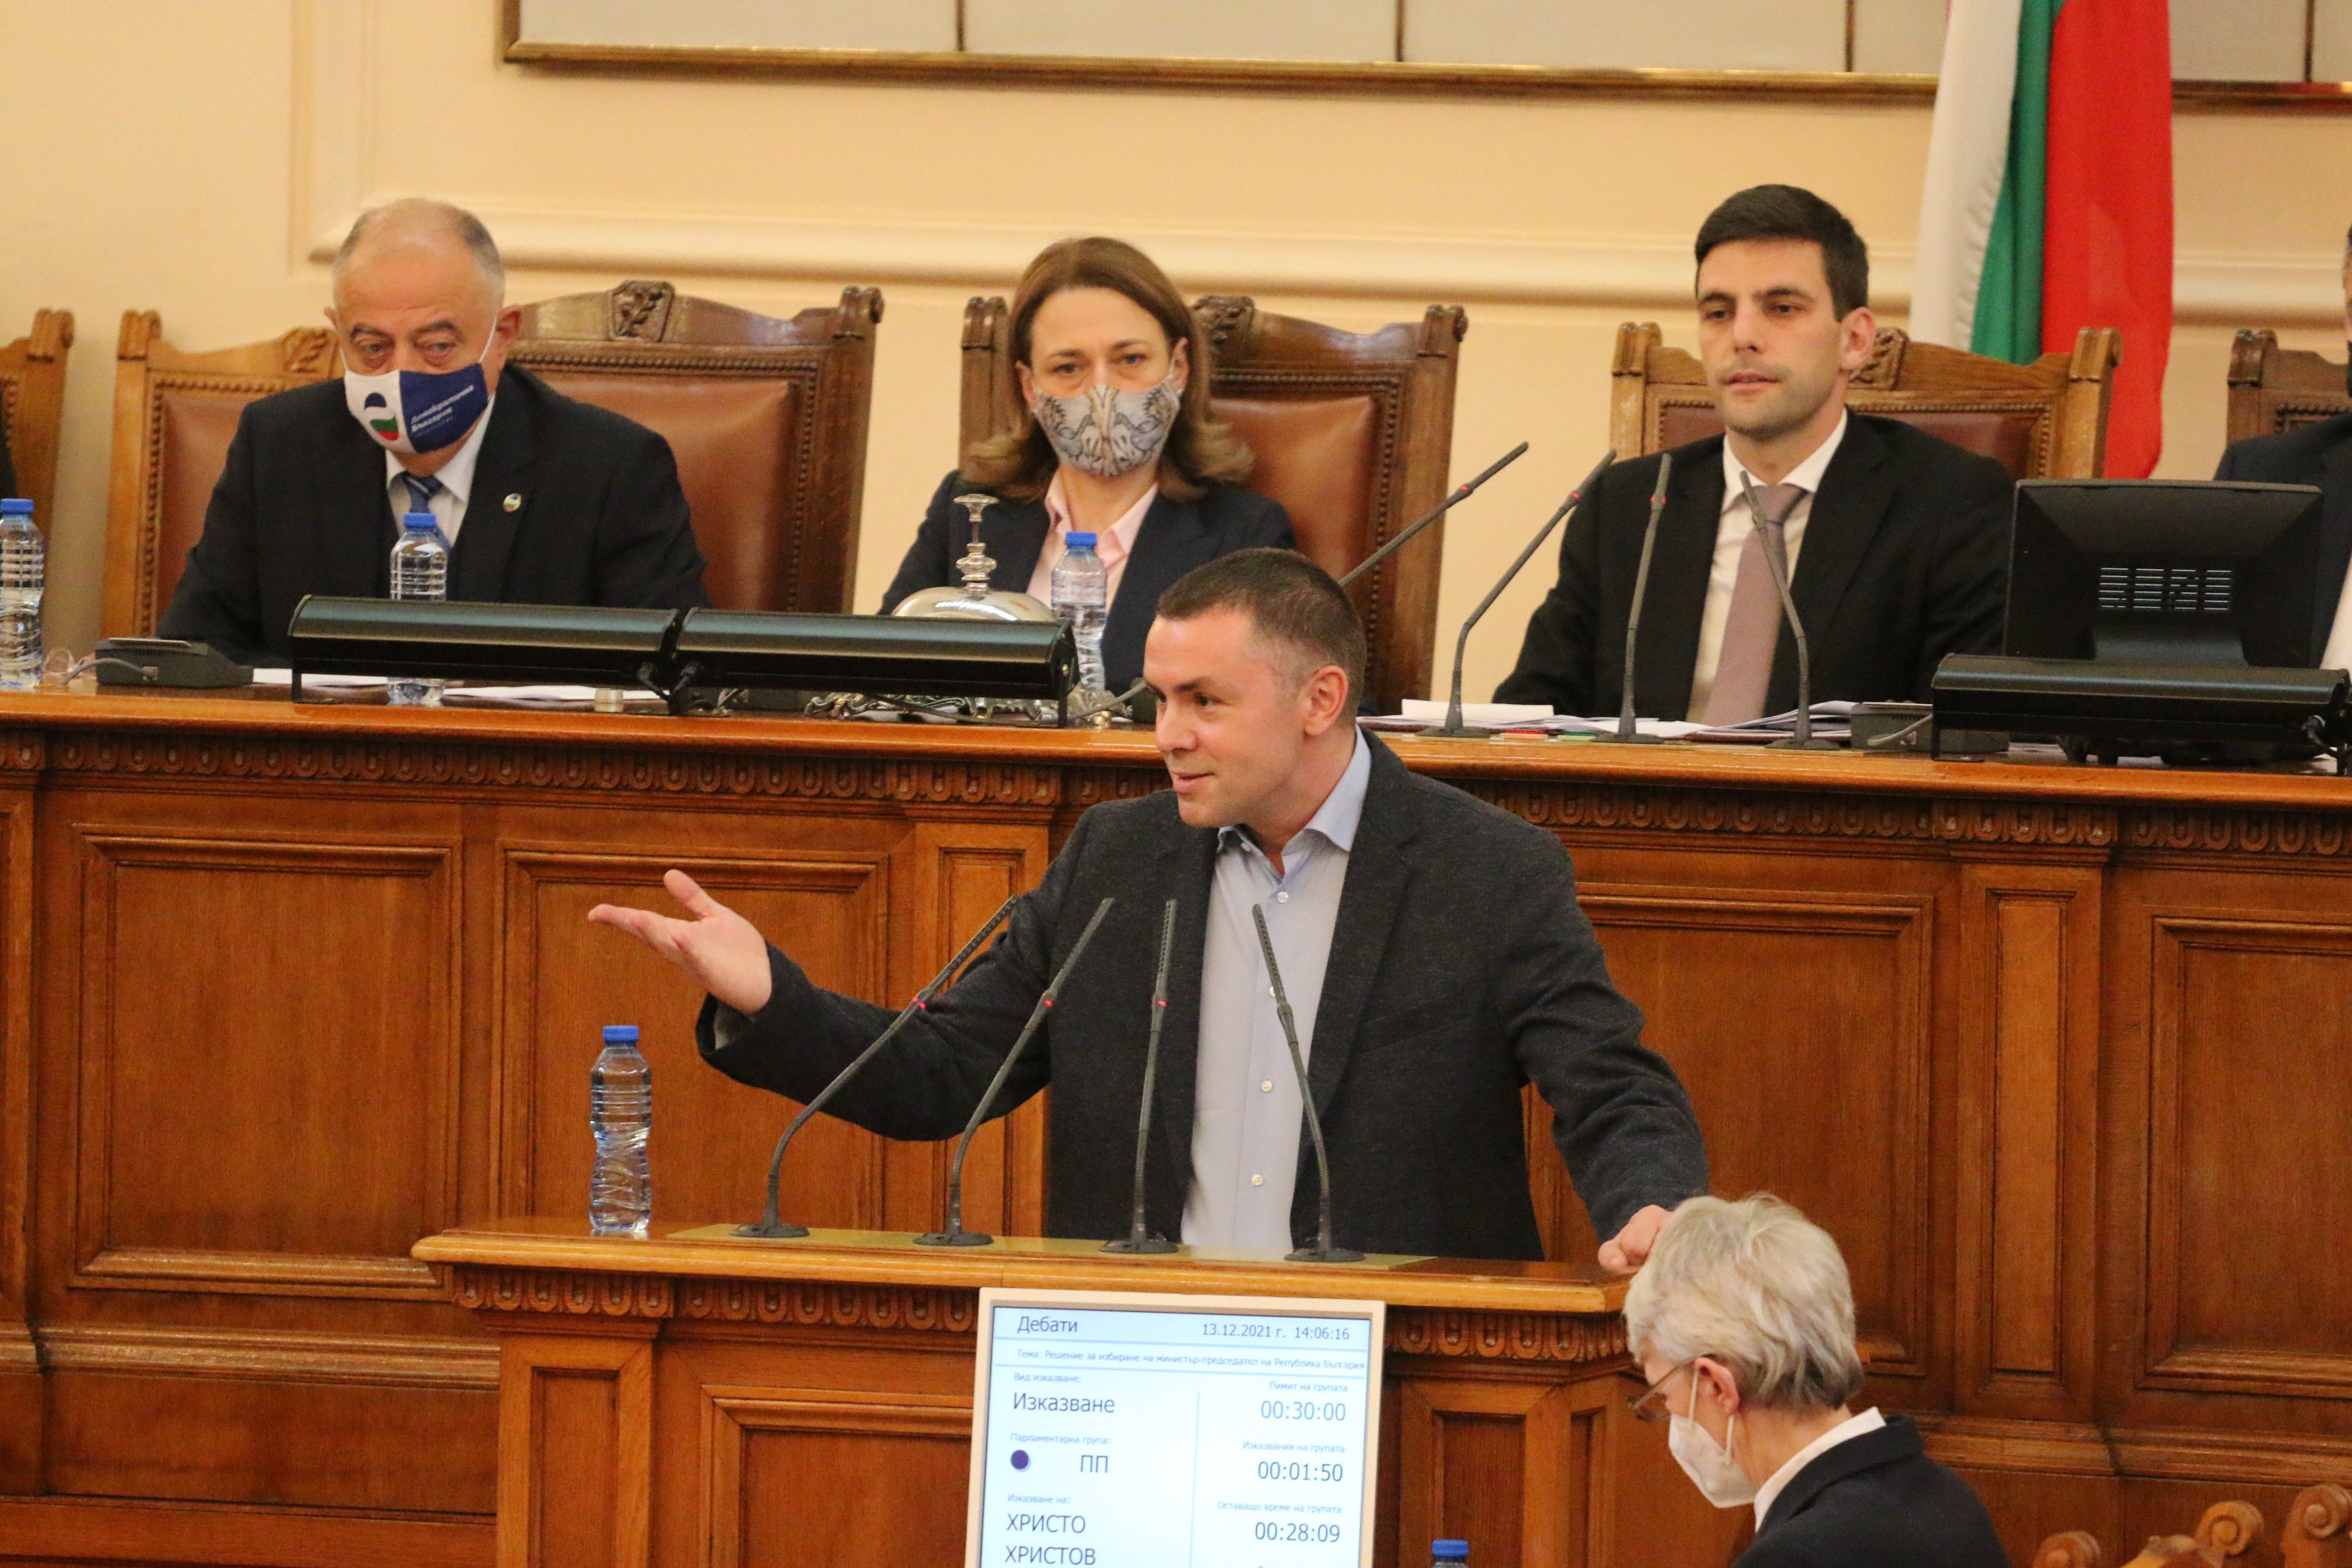 Софийска районна прокуратура се самосезира във връзка с изявления направени